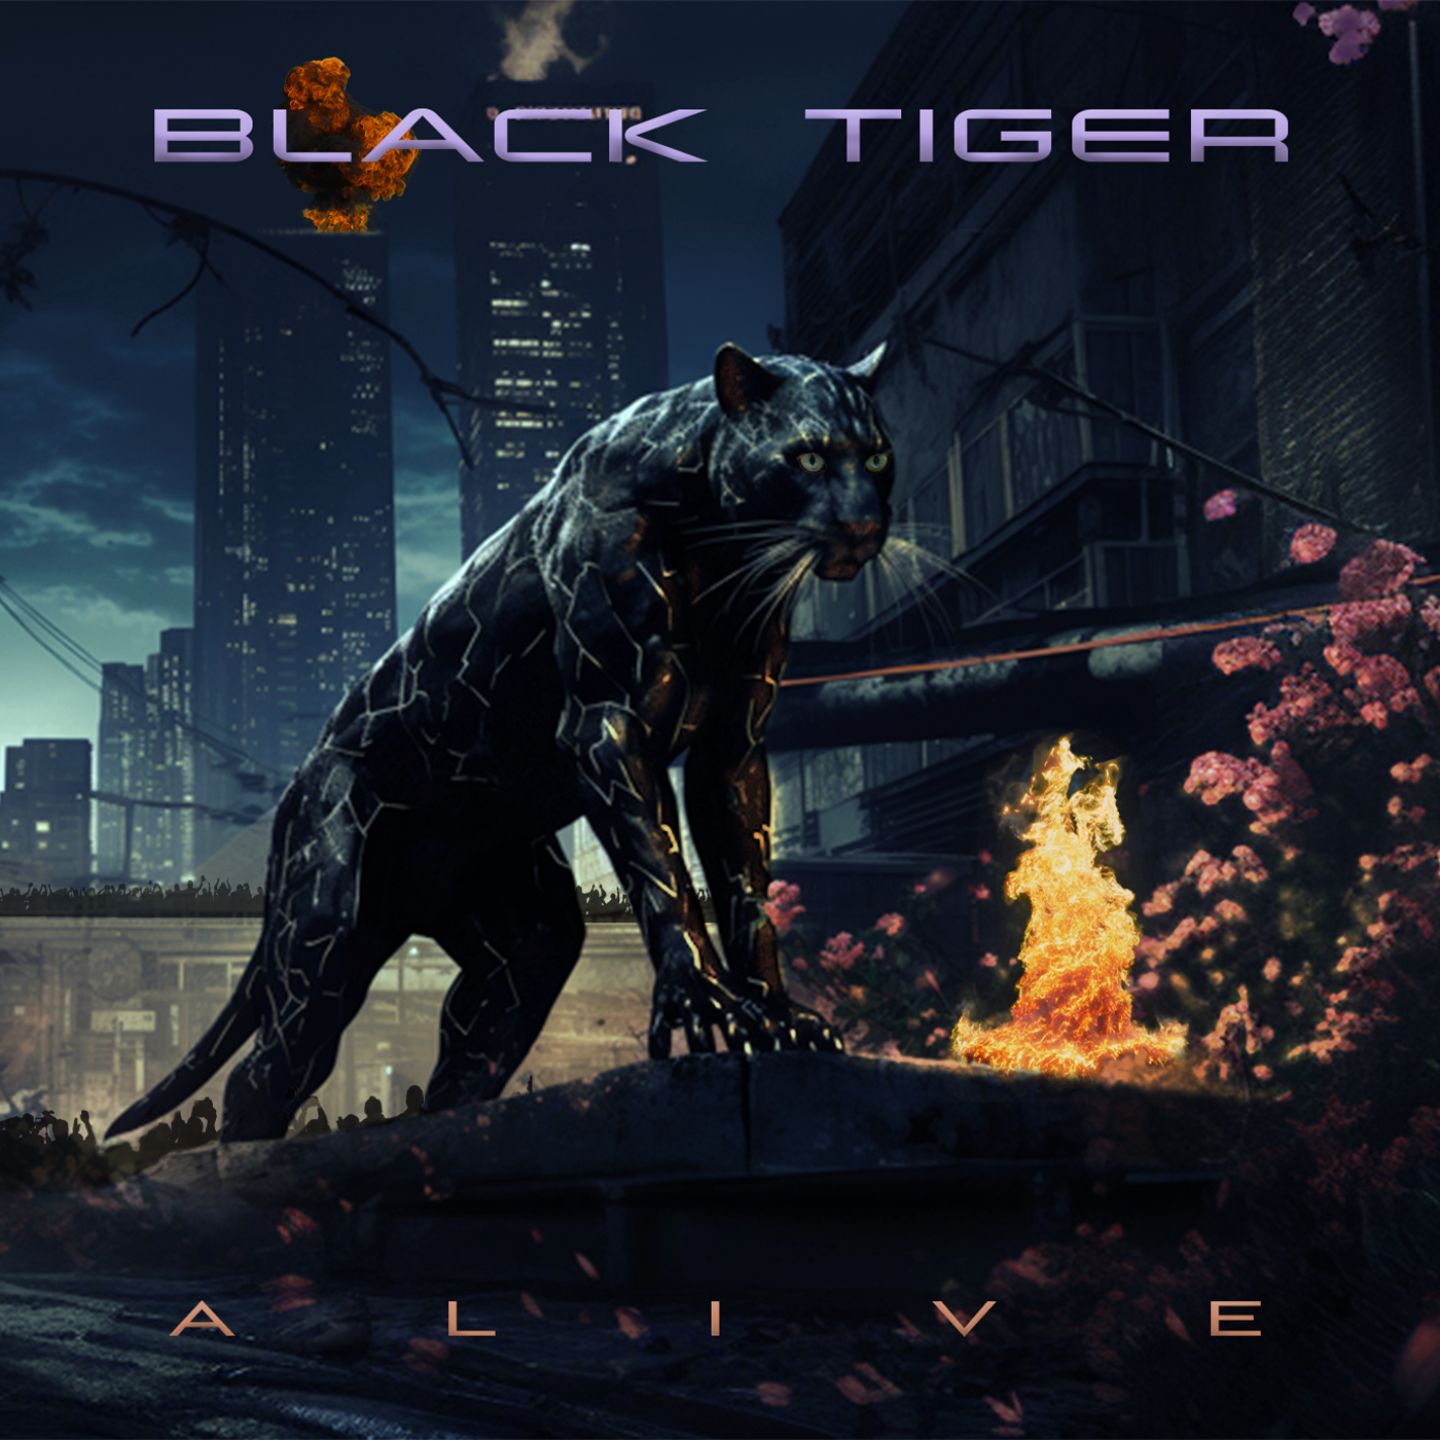 Black Tiger Alive